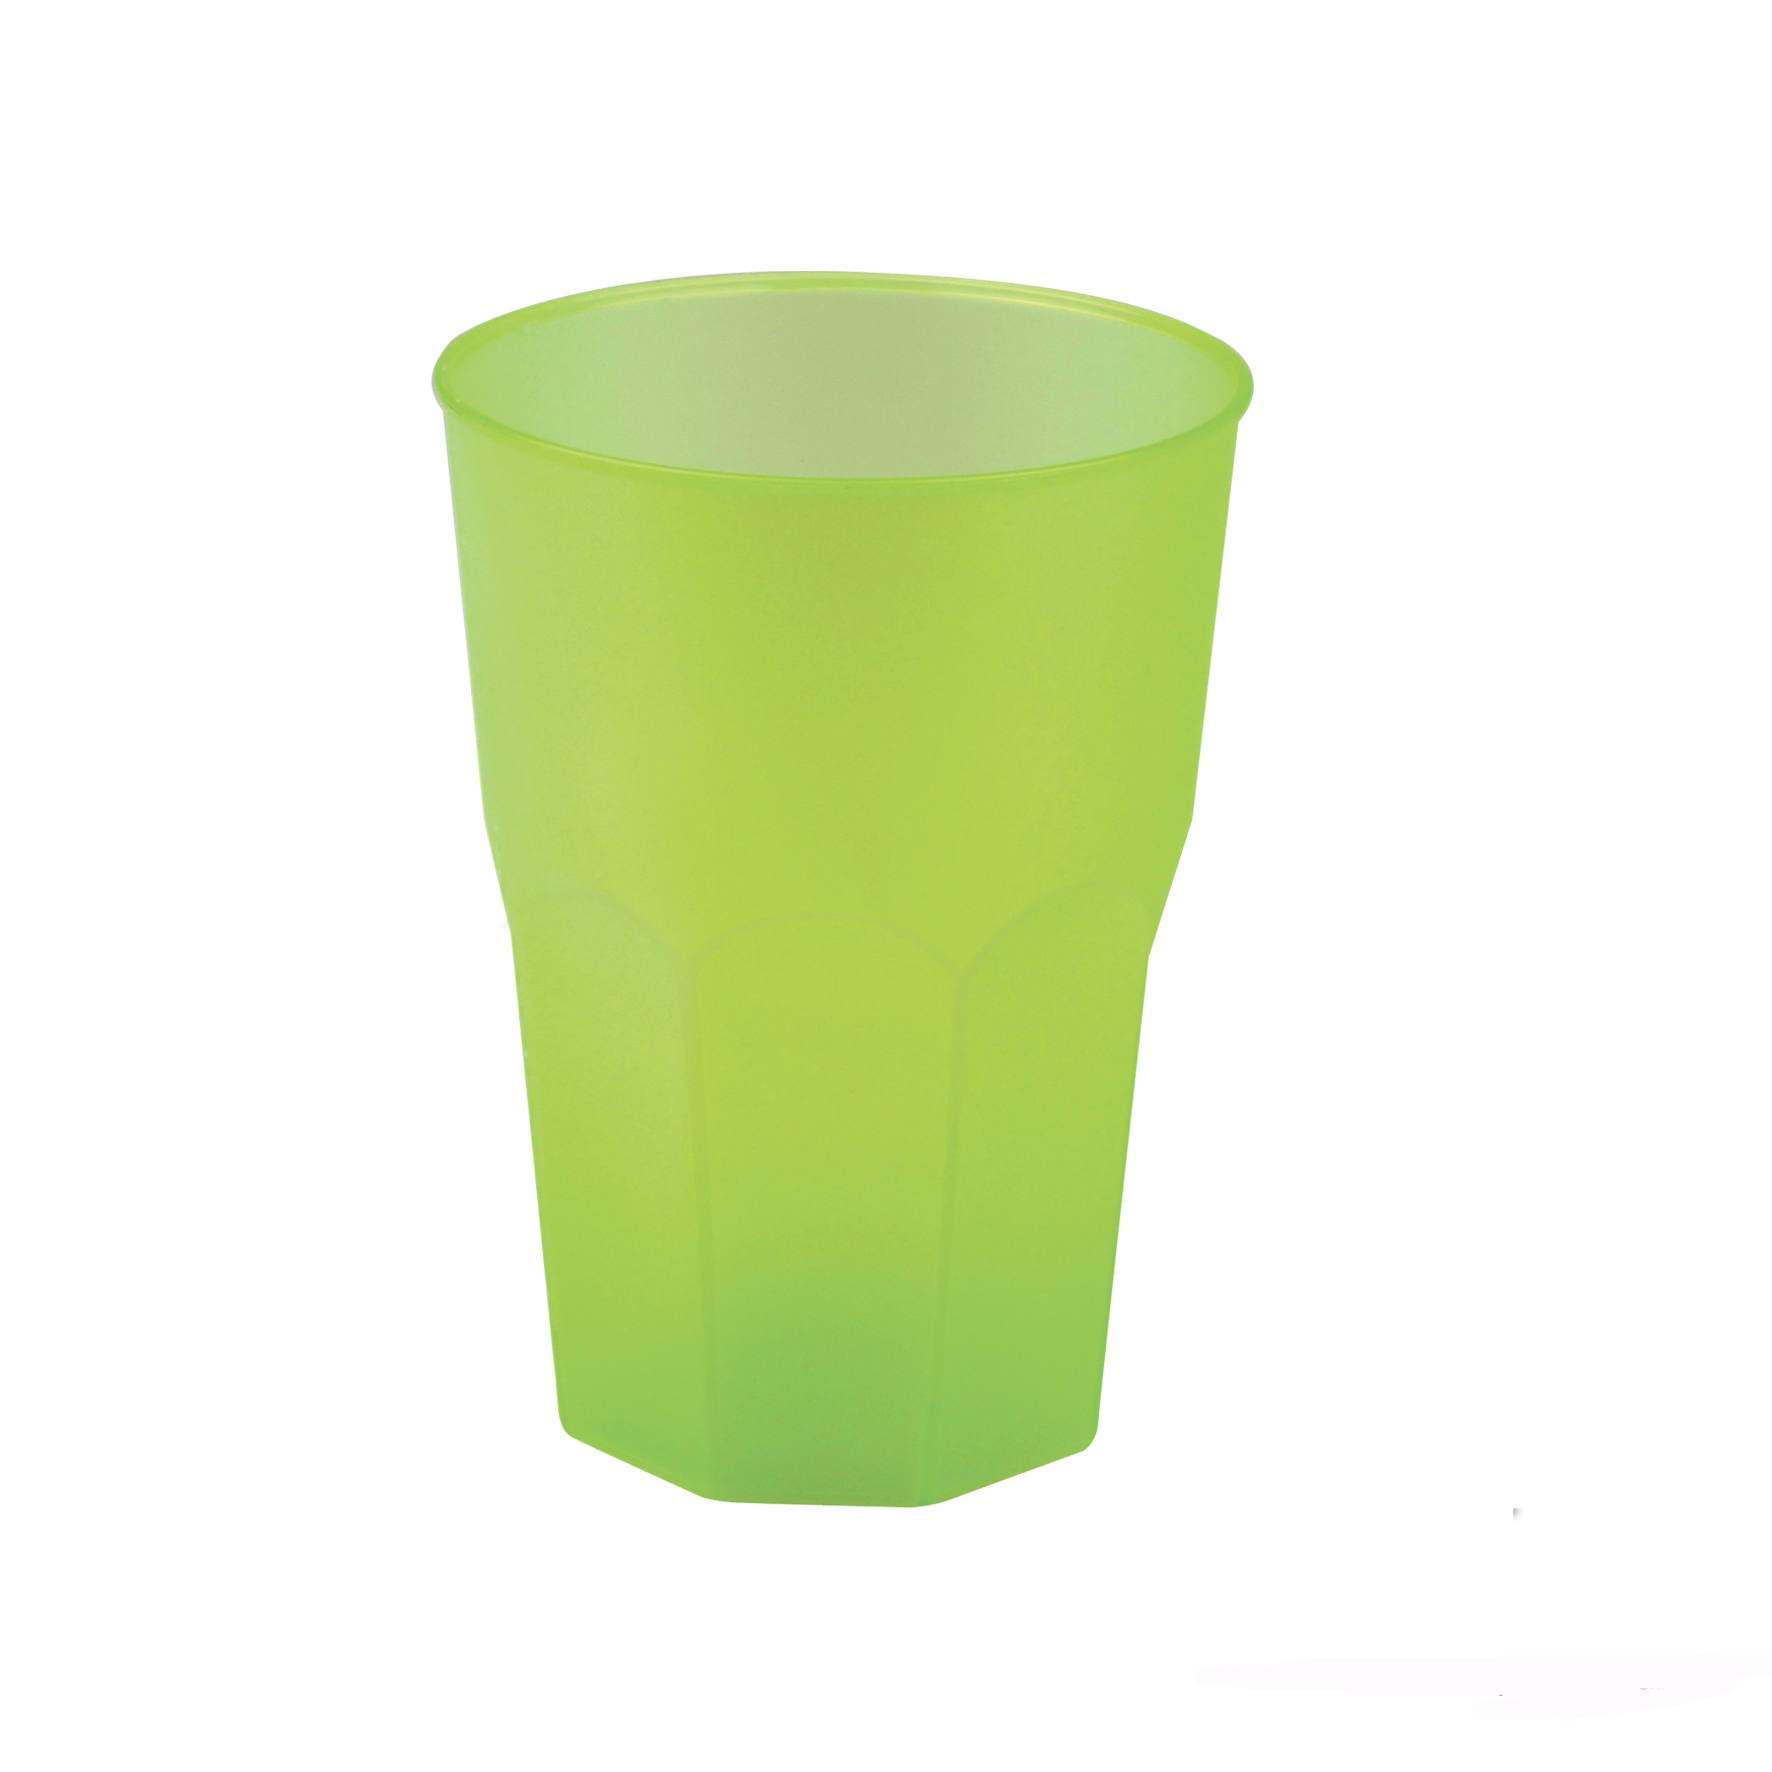 bicchieri in plastica dura lavabili e riutilizzabili infrangibili per eventi